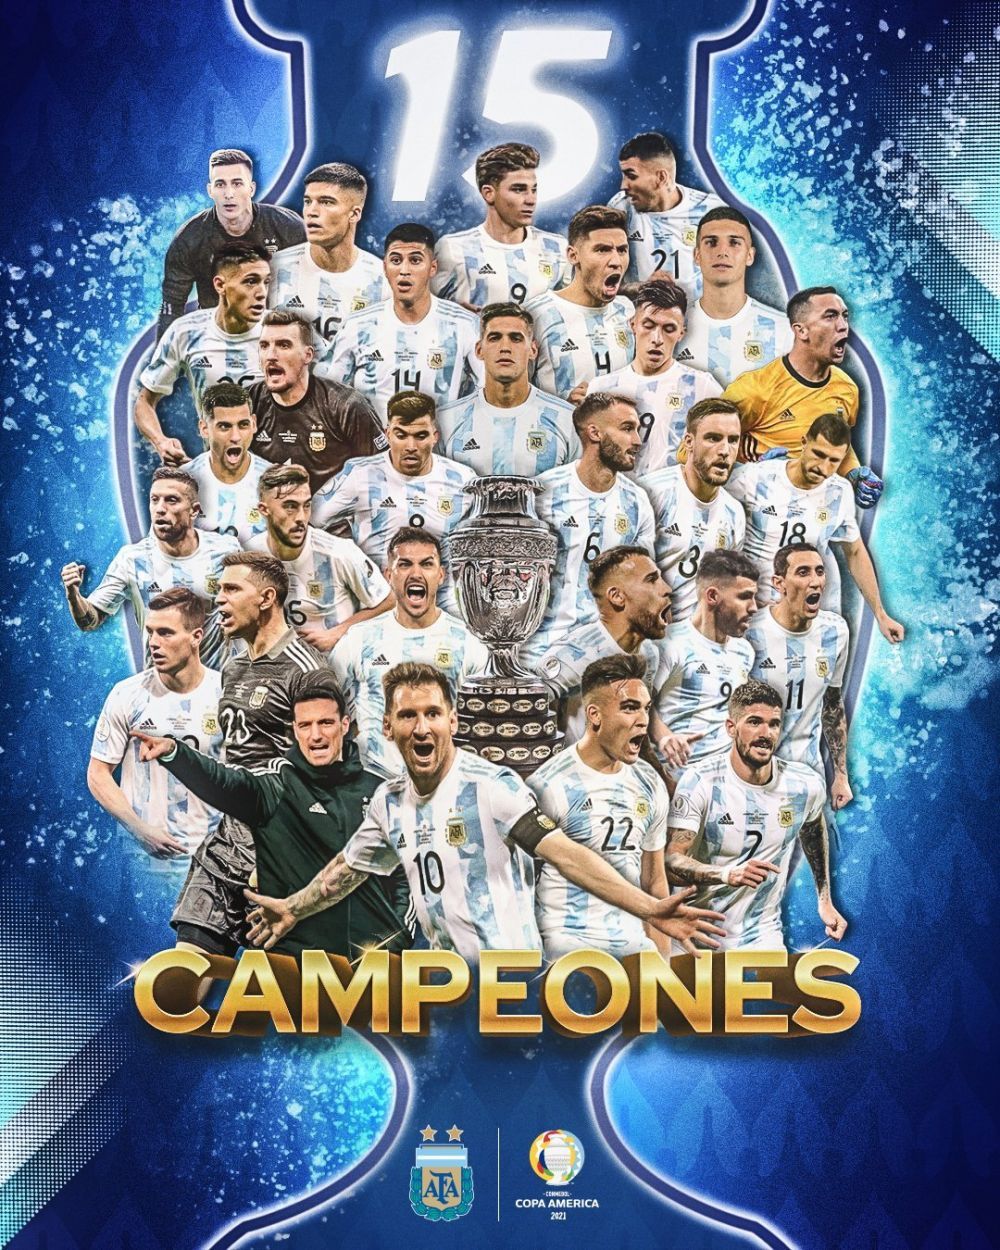 这是时隔28年后,阿根廷队再次捧起美洲杯冠军奖杯.